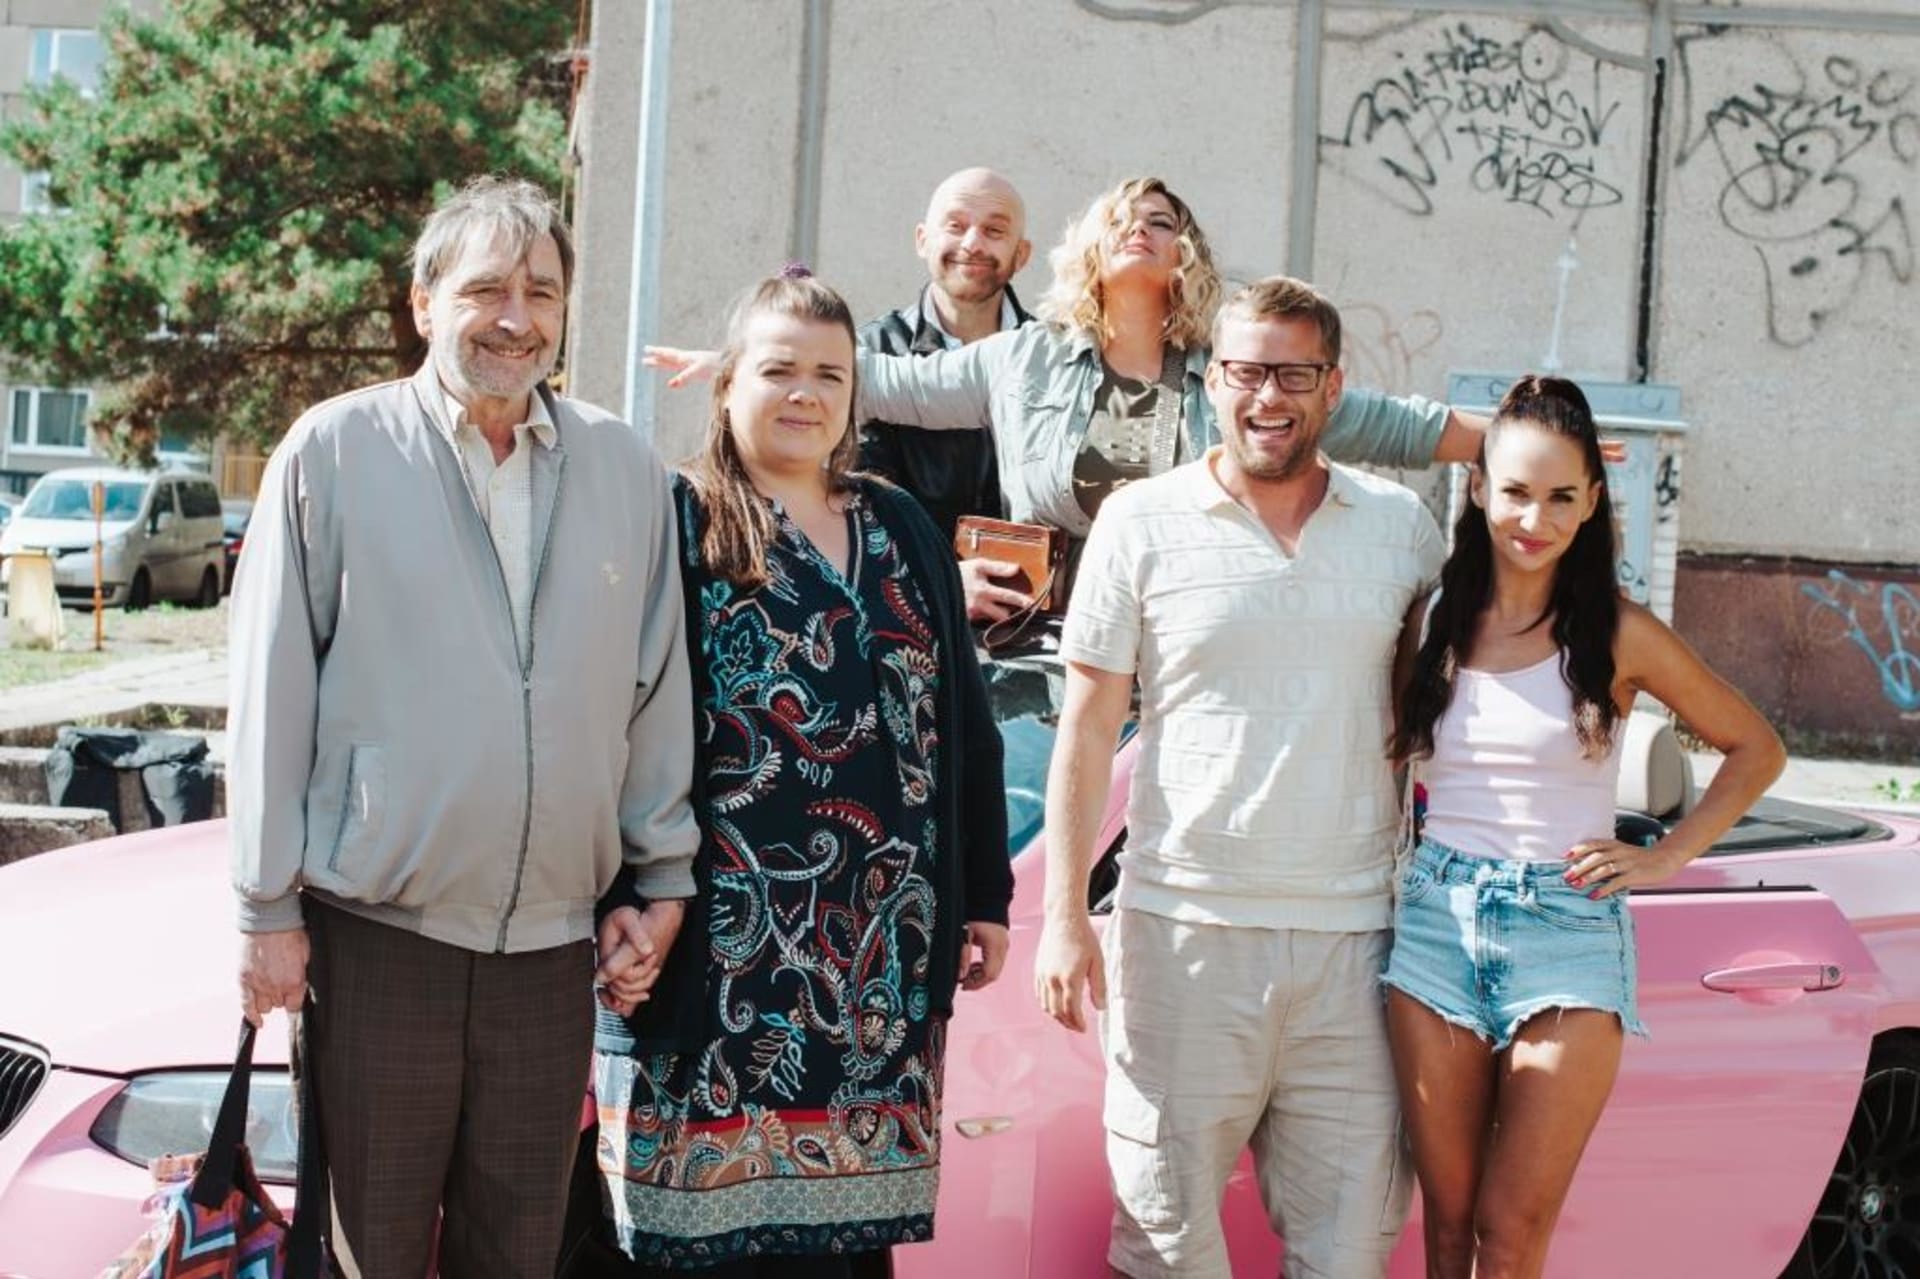 Režisér Vojtěch Moravec začal natáčet komedii Hádkovi, o rodině, která se pořád hádá.